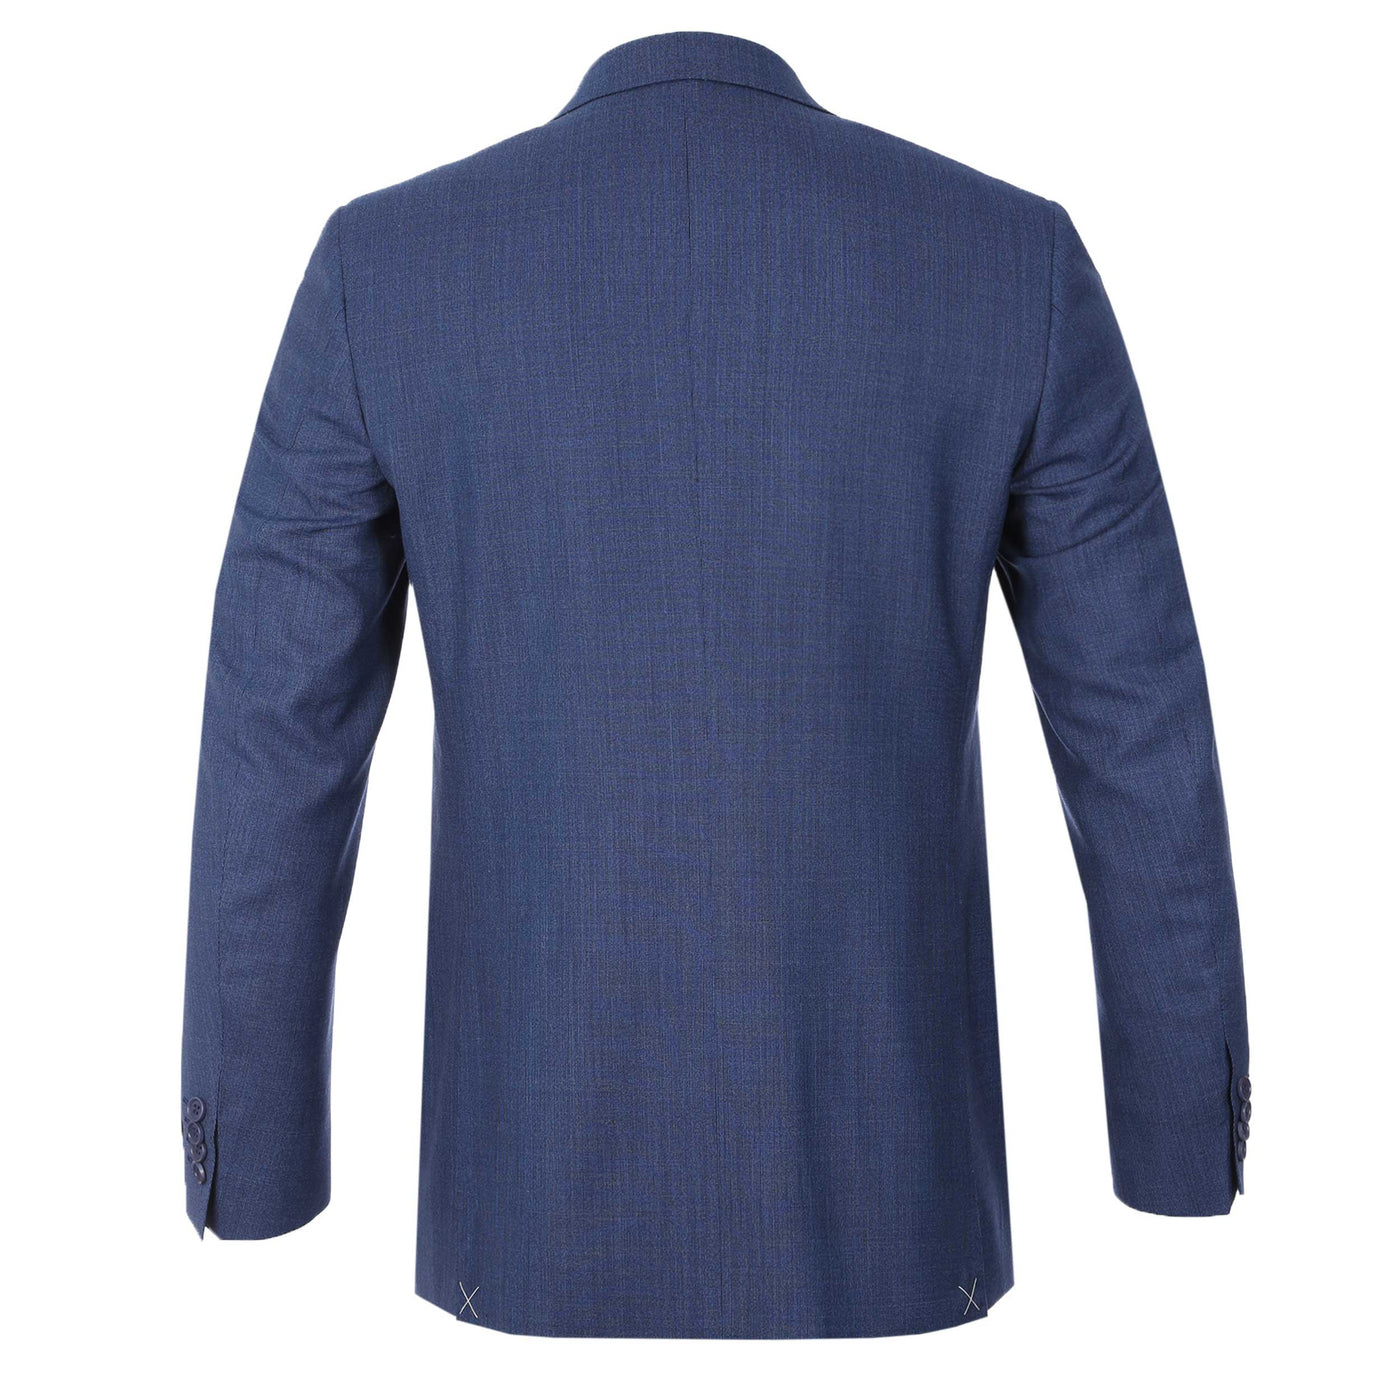 Canali Peak Lapel Stretch Suit in Denim Blue Back